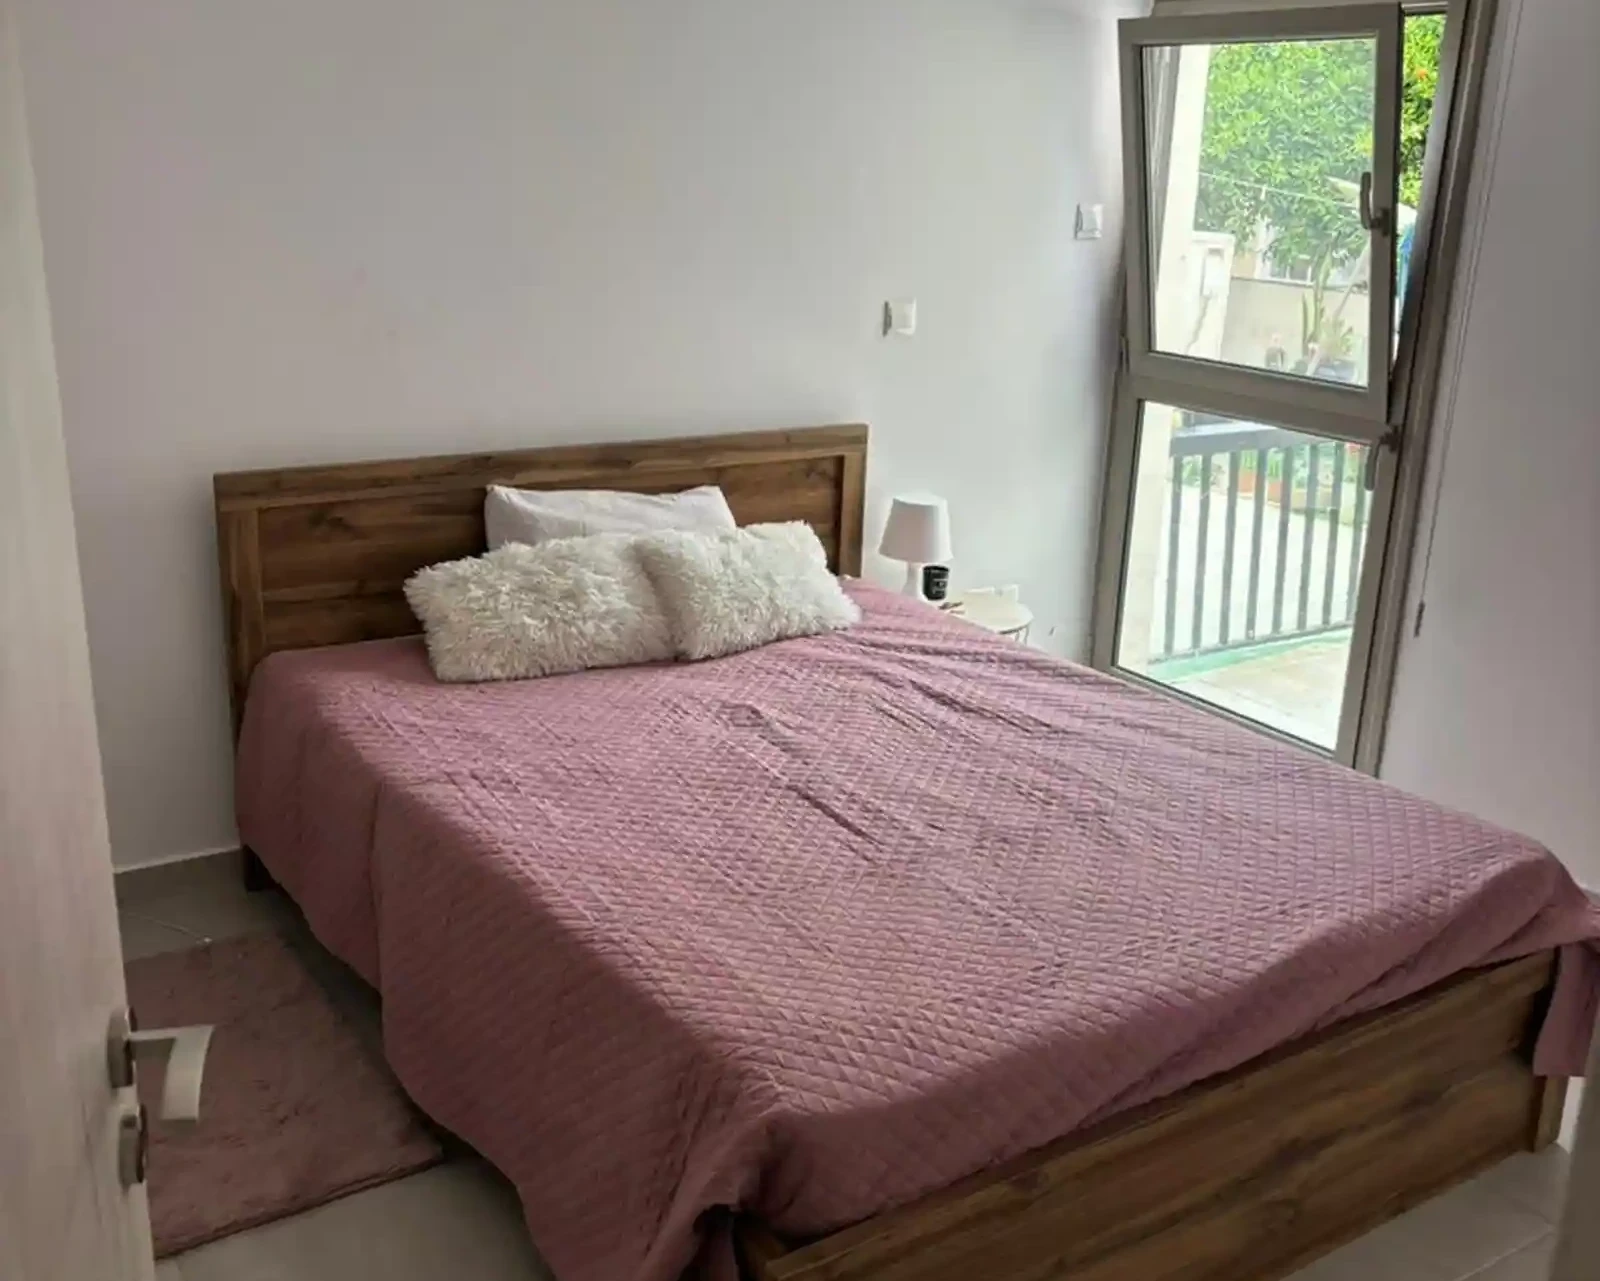 3-bedroom semi-detached to rent €1.400, image 1